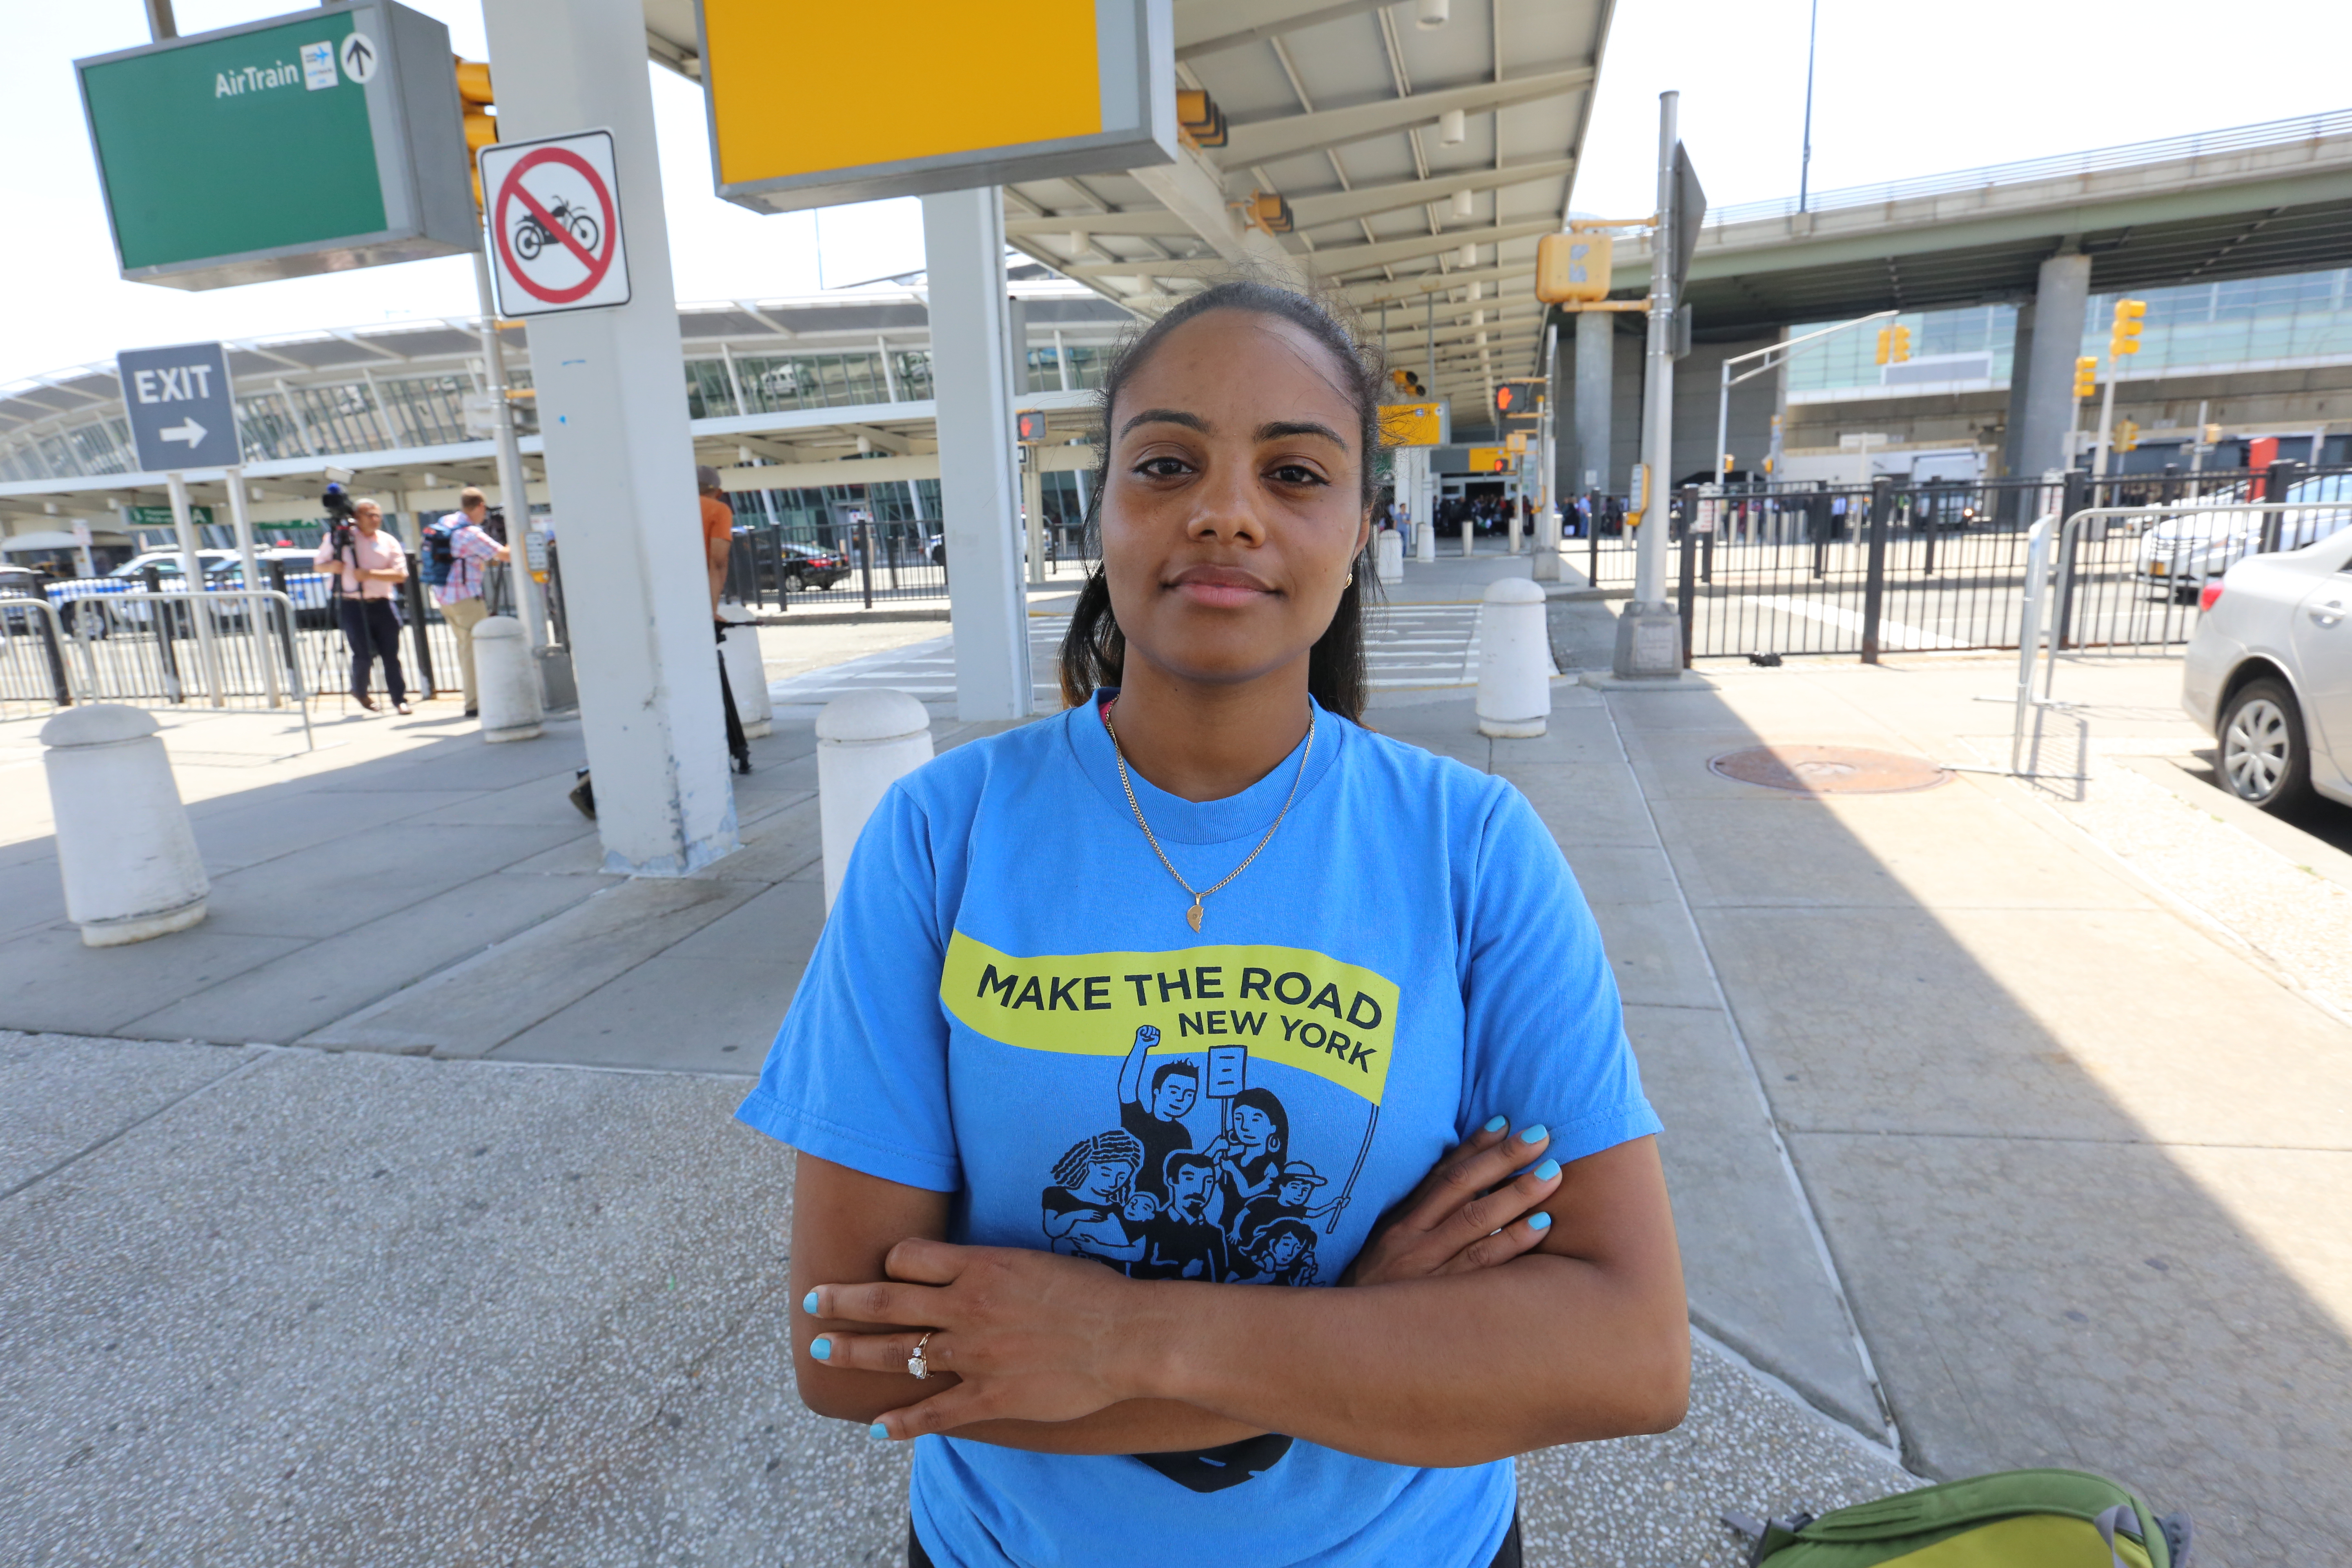 Yaritza Mendez. Varios grupos de ayuda a los inmigrantes en el aeropuerto de JFK, en el dia que sera implementado el veto de los musulmanes a los EEUU.